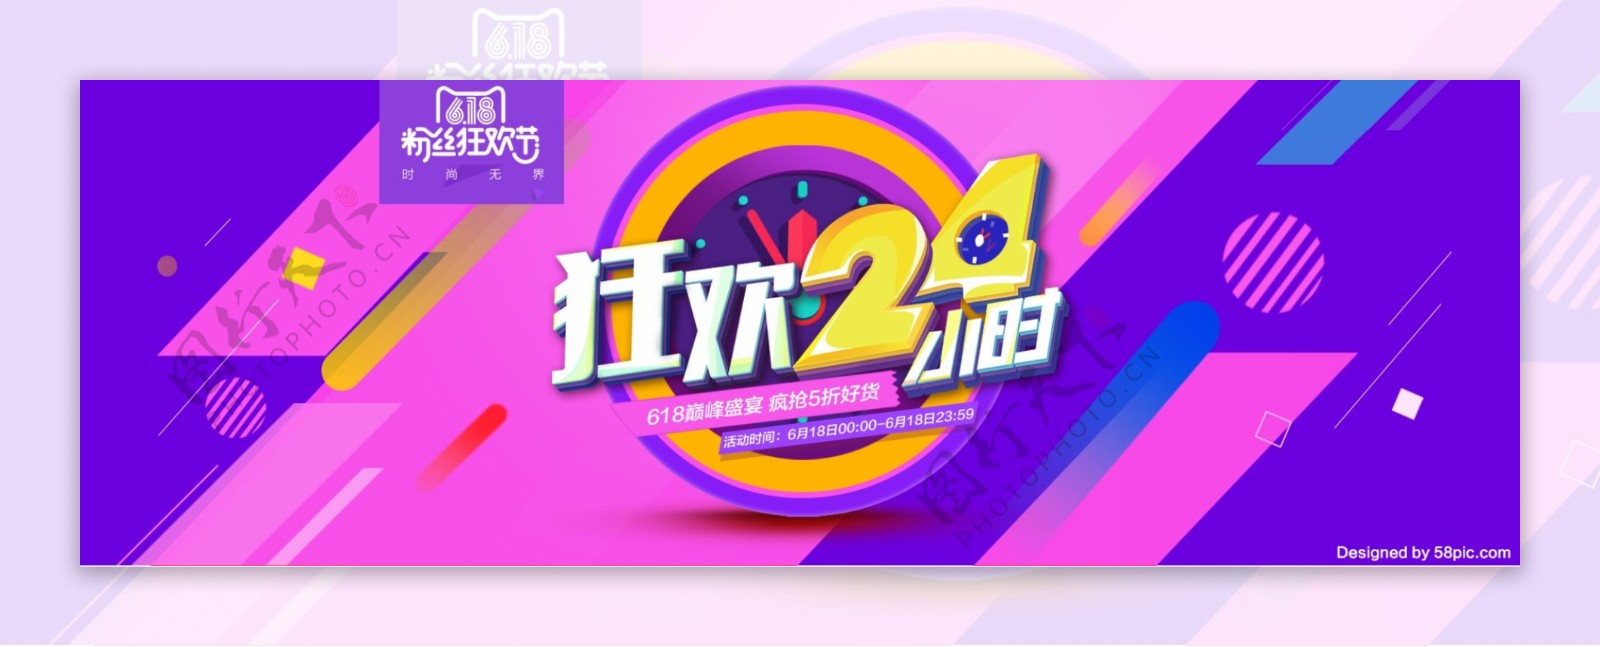 618粉丝狂欢节淘宝电商海报banner